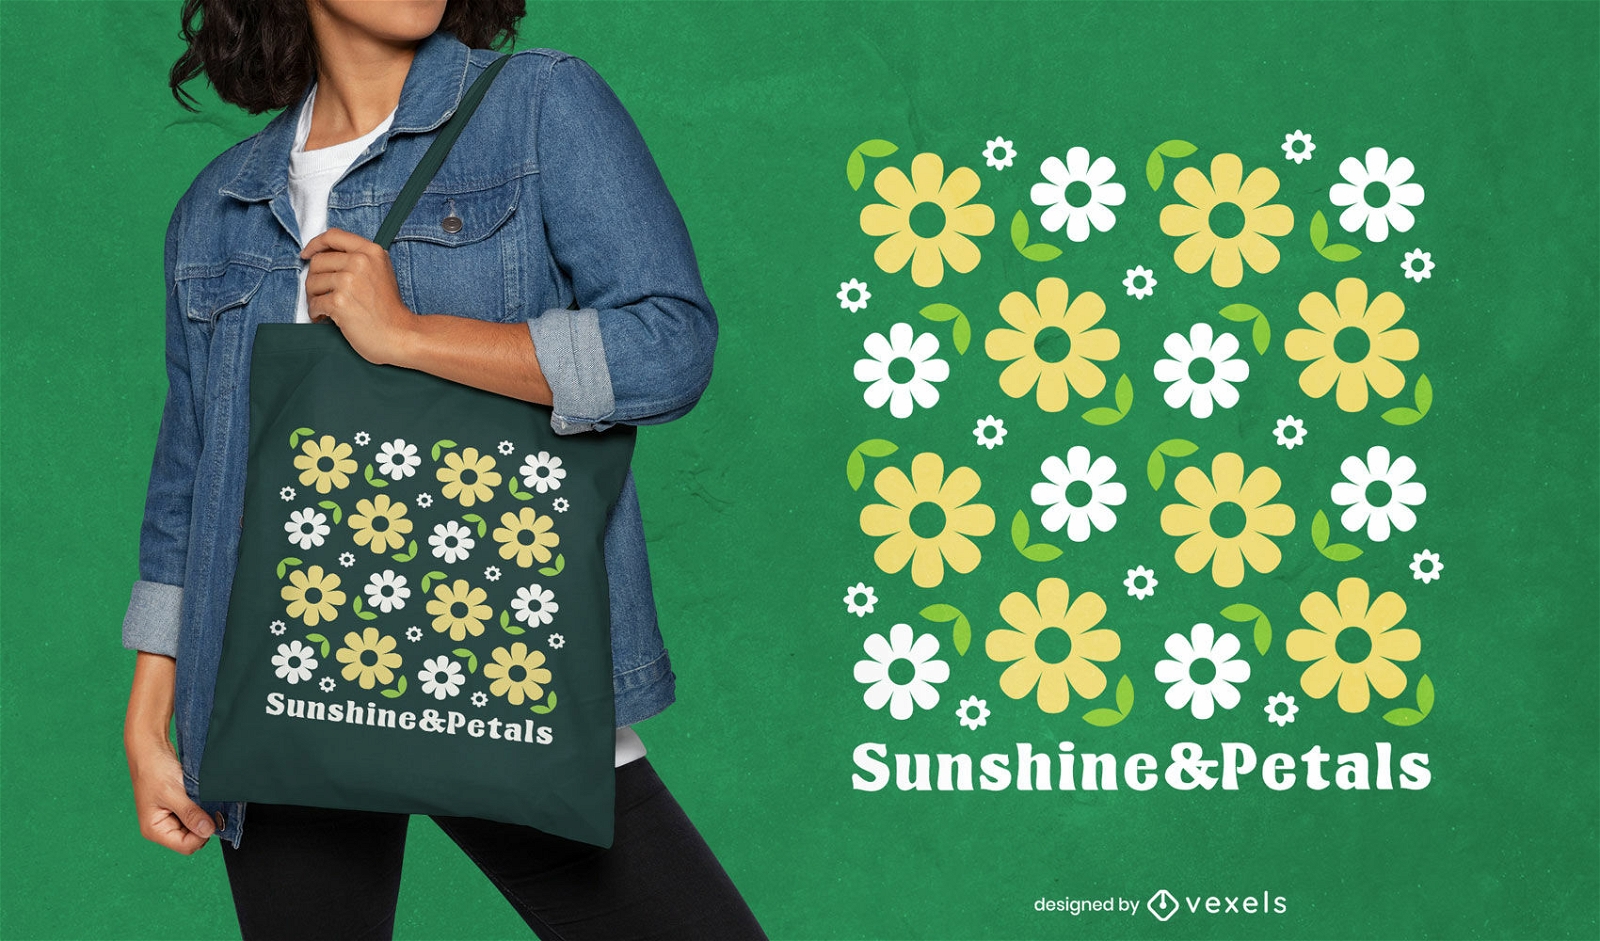 Design einer Einkaufstasche mit Sonnenschein und Bl?tenbl?ttern